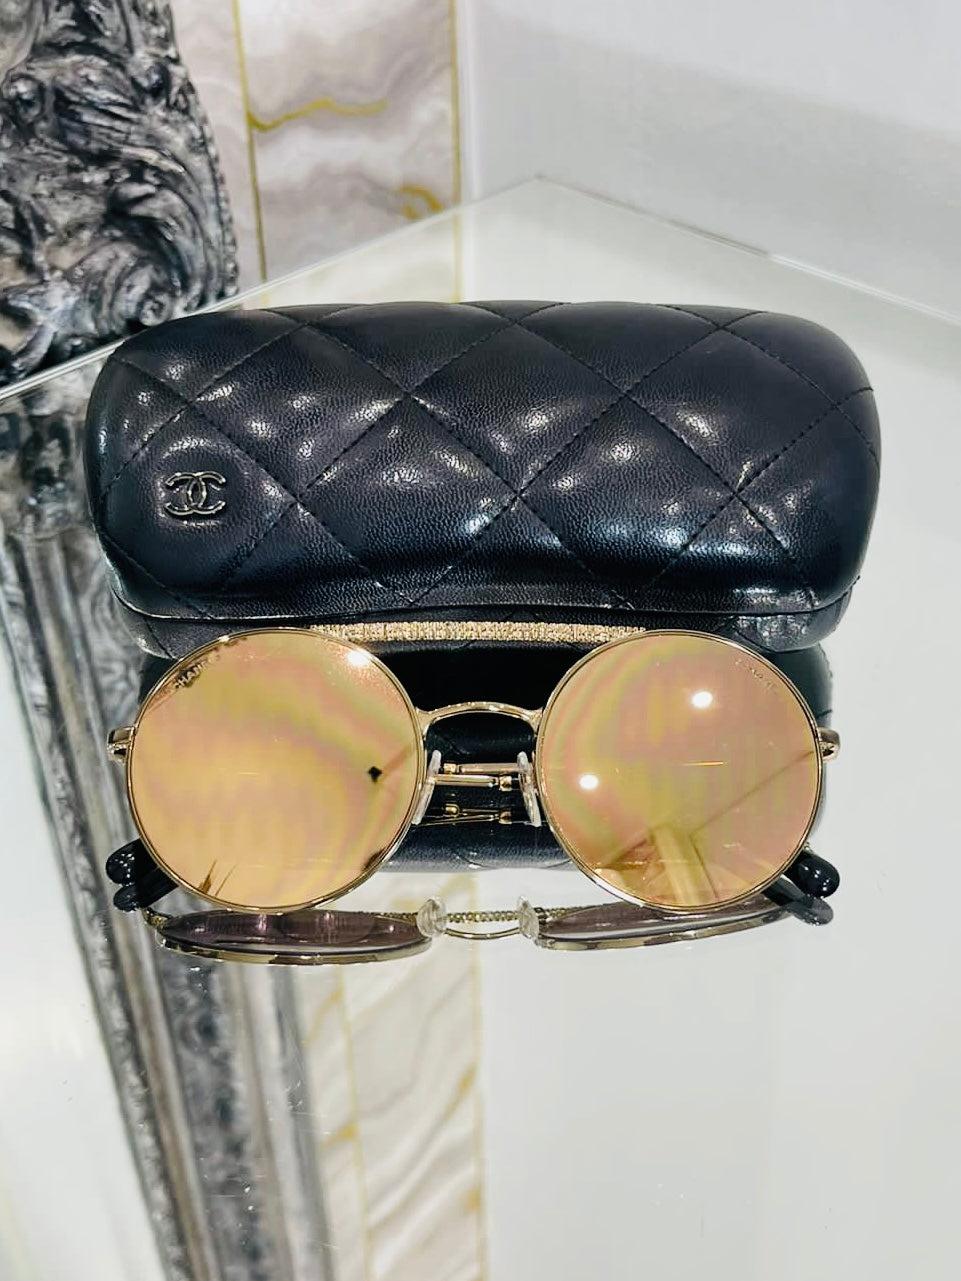 Chanel Verspiegelte runde Sonnenbrille

Goldfarbener, strukturierter Rahmen mit verspiegelten Gläsern und 'CC'-Logo auf jedem Bügel.

Zusätzliche Informationen:
Größe - O/S
Zusammensetzung- Metall
Zustand - Gut (Es gibt ein kleines